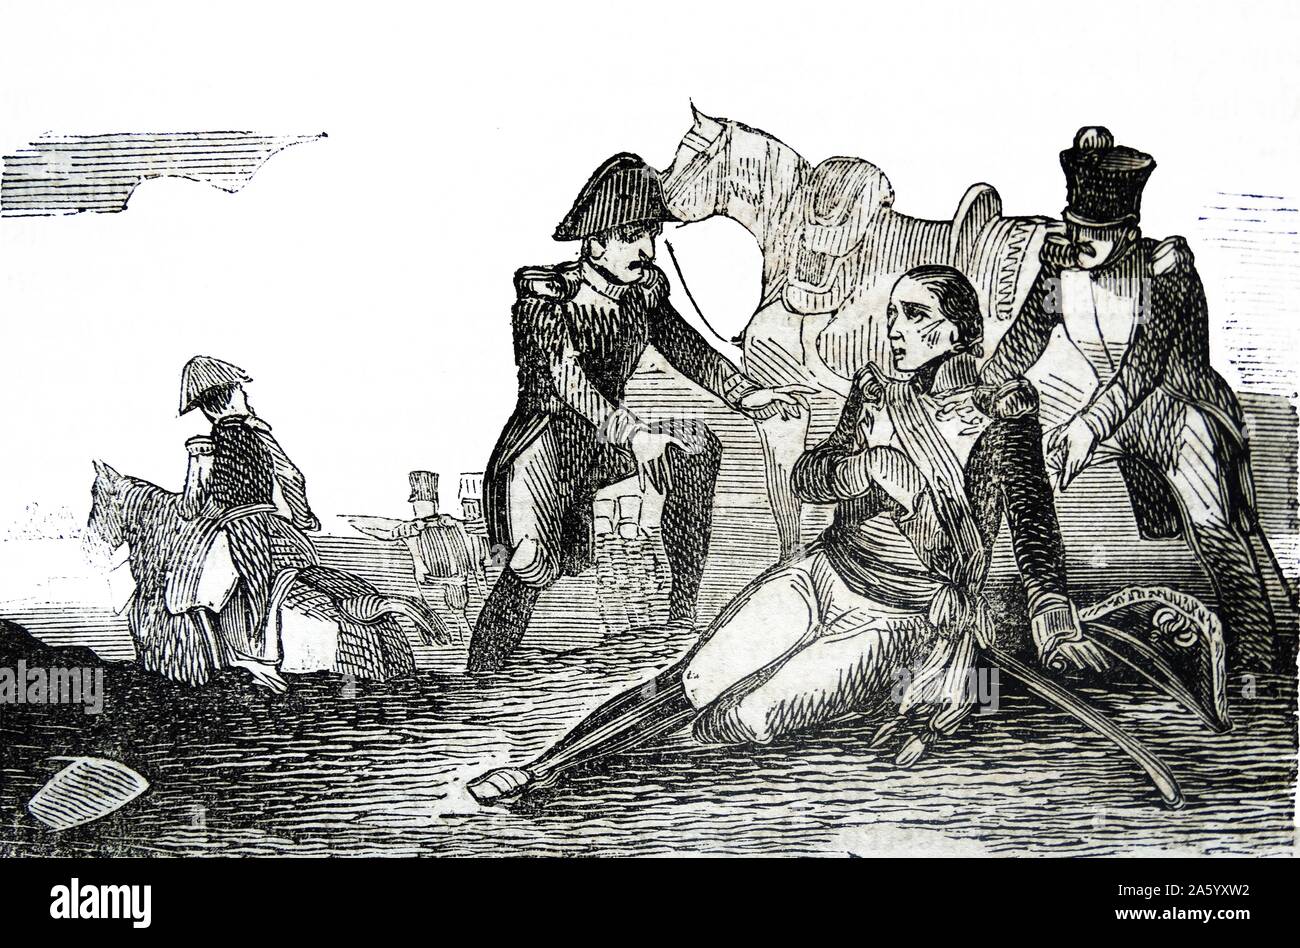 Darstellung der Schlacht von La Coruña Gravur, fand am 16. Januar 1809, als ein französisches Korps unter Marschall des Reiches Nicolas Jean de Dieu Soult eine britische Armee unter Generalleutnant Sir John Moore angegriffen. Die Schlacht fand inmitten des Unabhängigkeitskrieges. Stockfoto